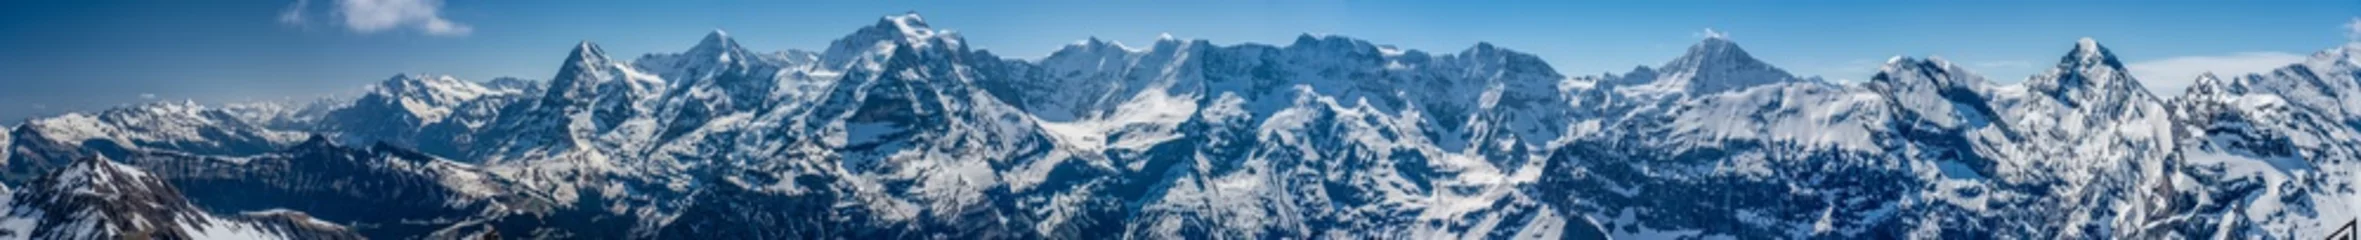 Papier Peint photo Panoramique Suisse, vue panoramique des Alpes enneigées